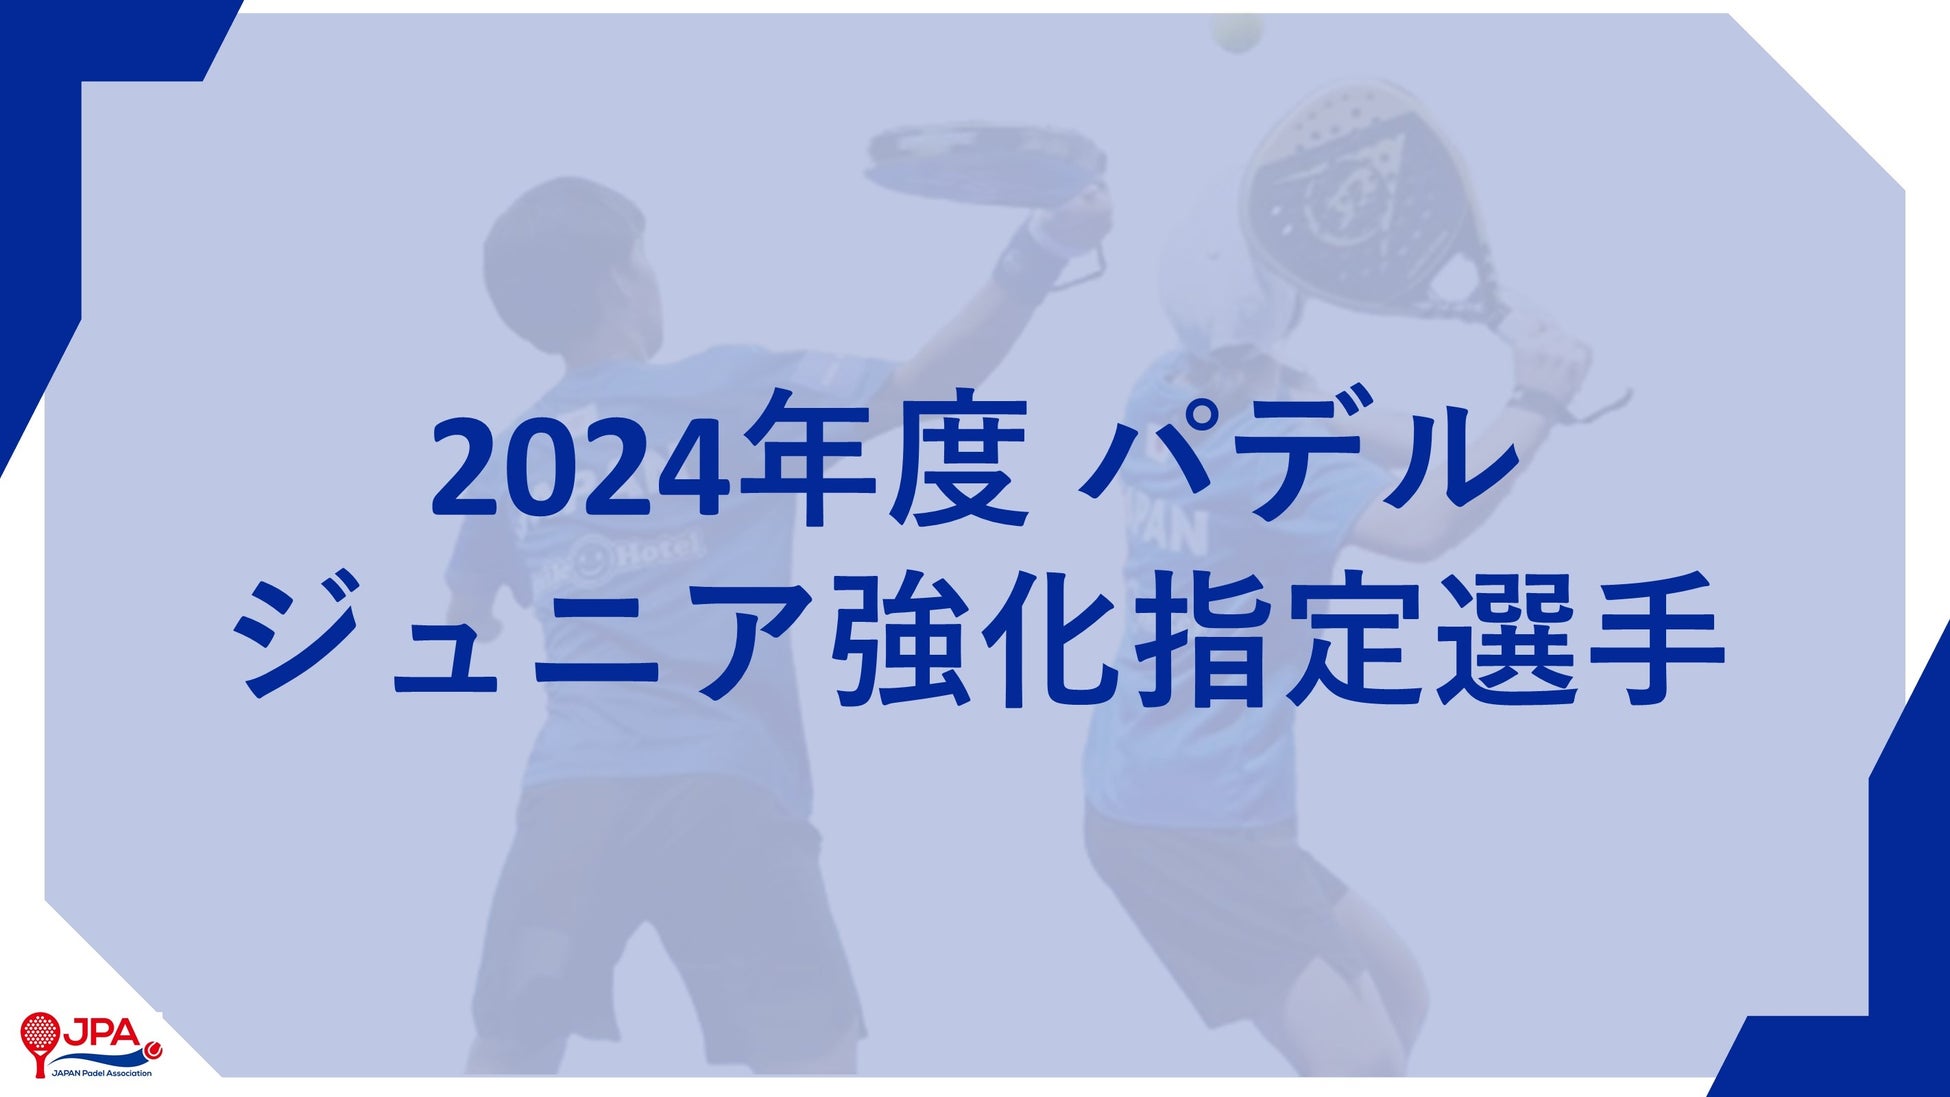 「2024年度 パデル ジュニア強化指定選手」 メンバー発表のお知らせ